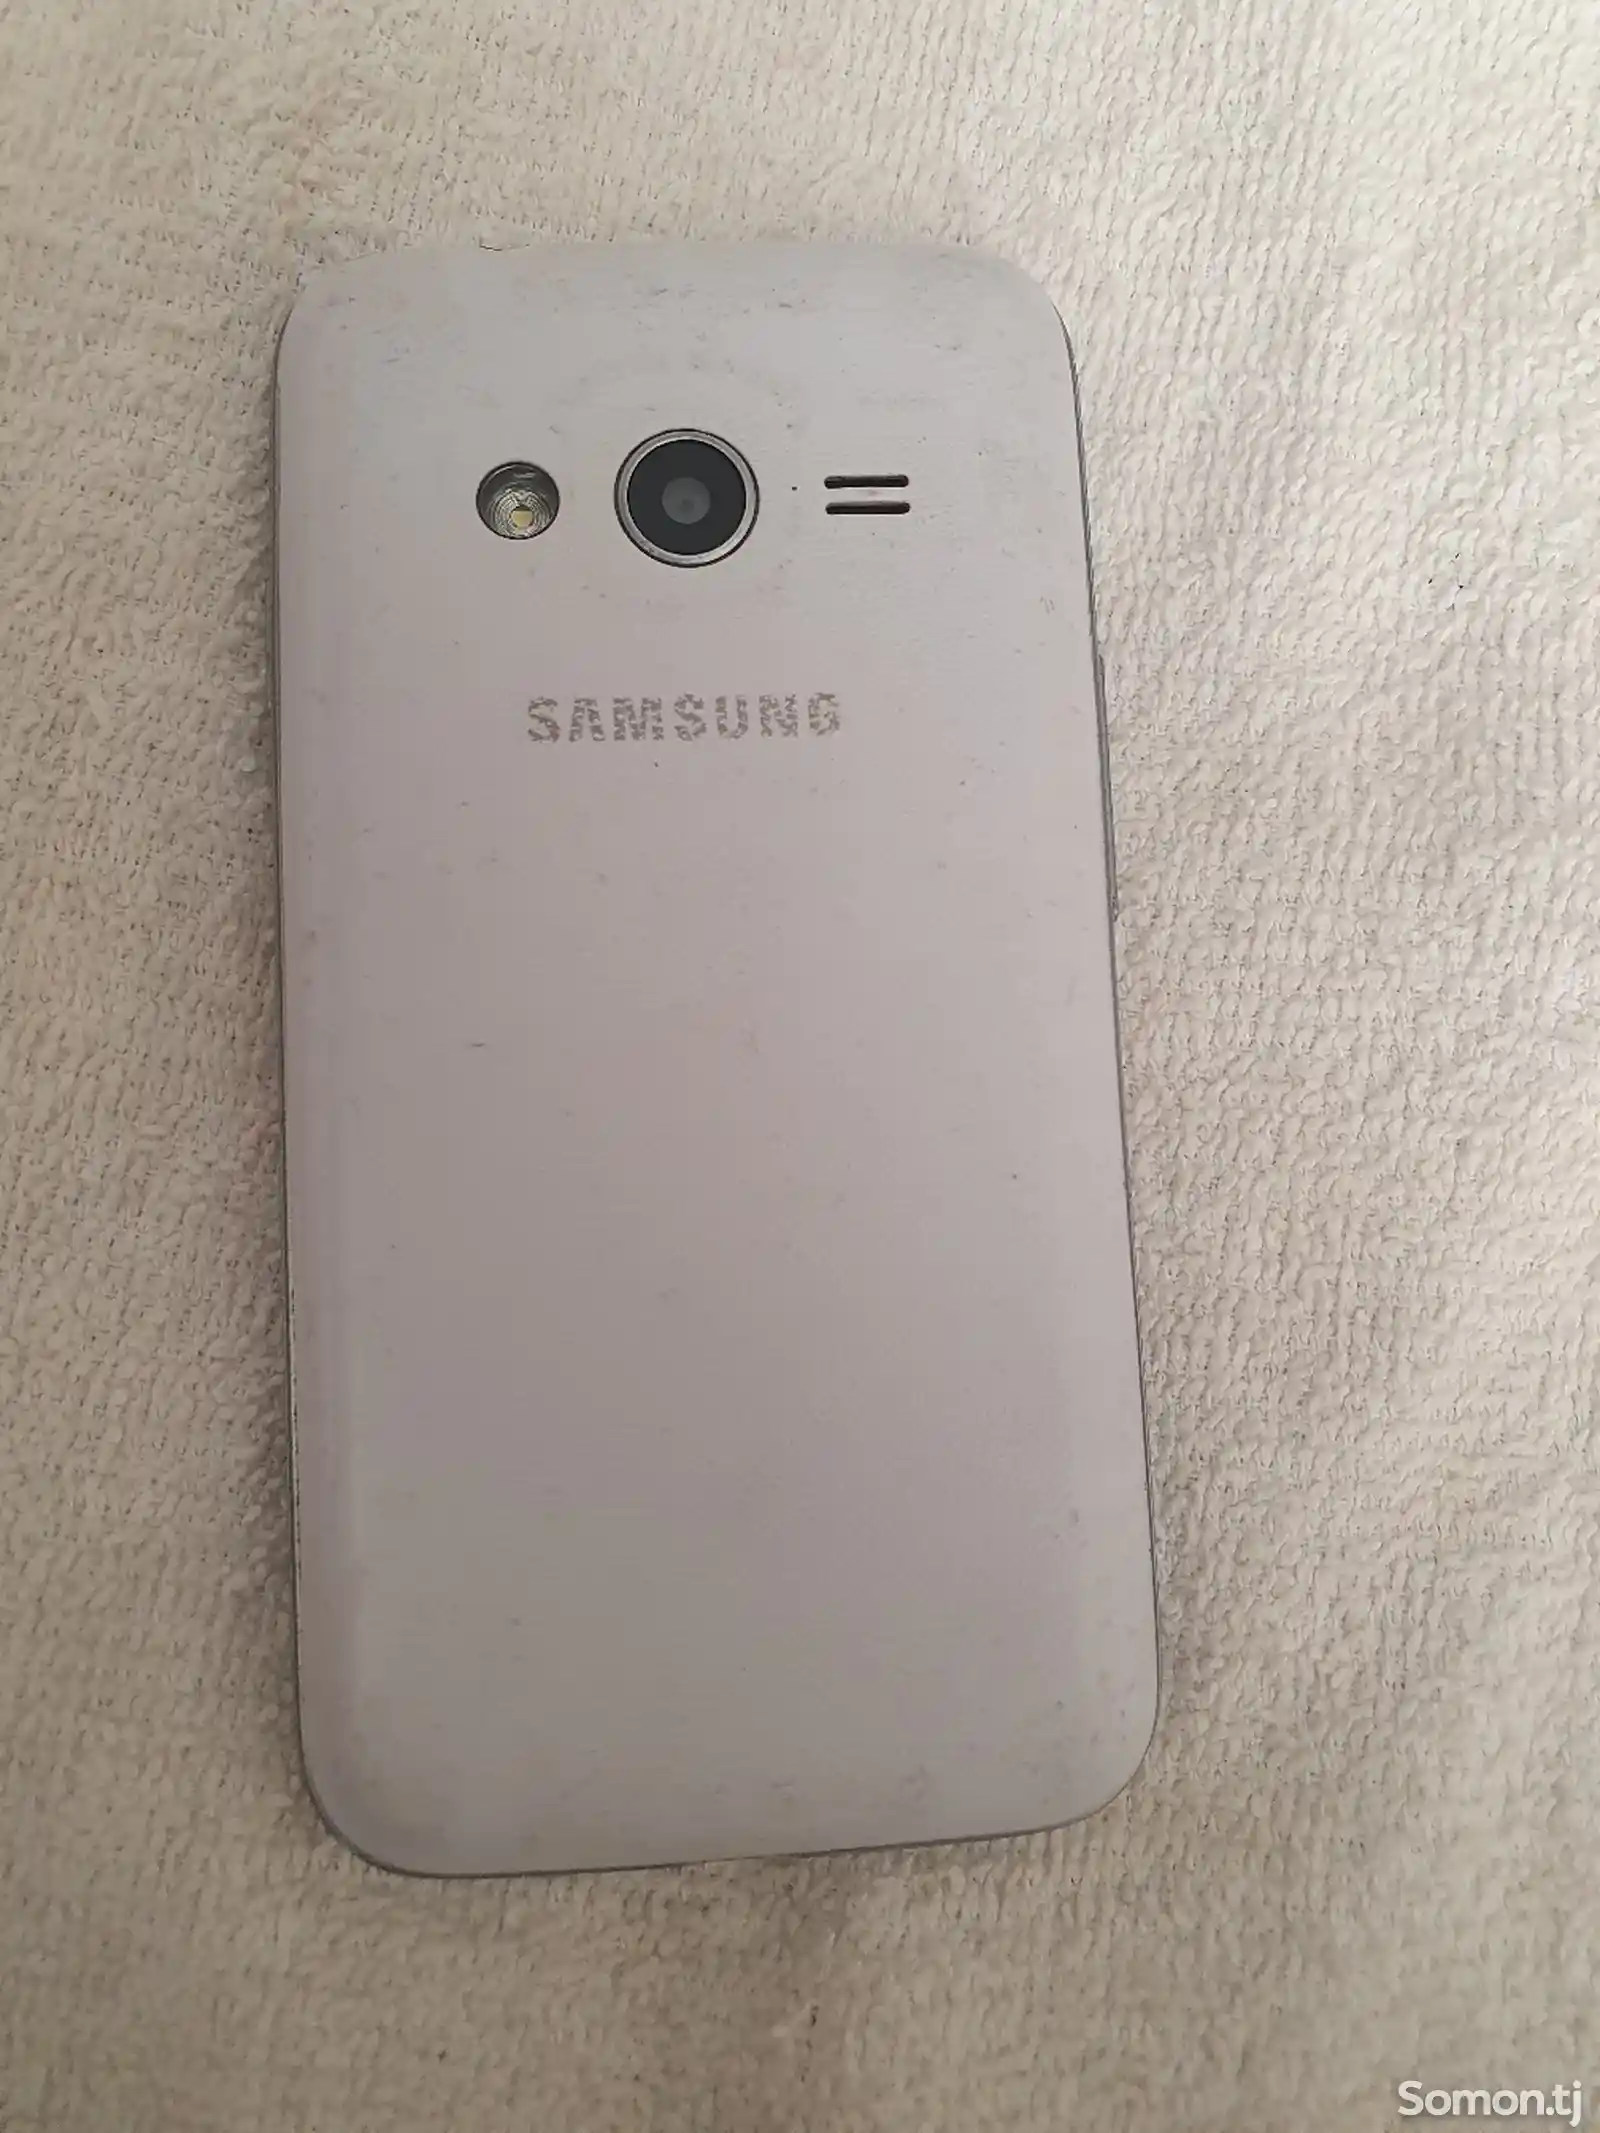 Samsung Galaxy Ice 4-2